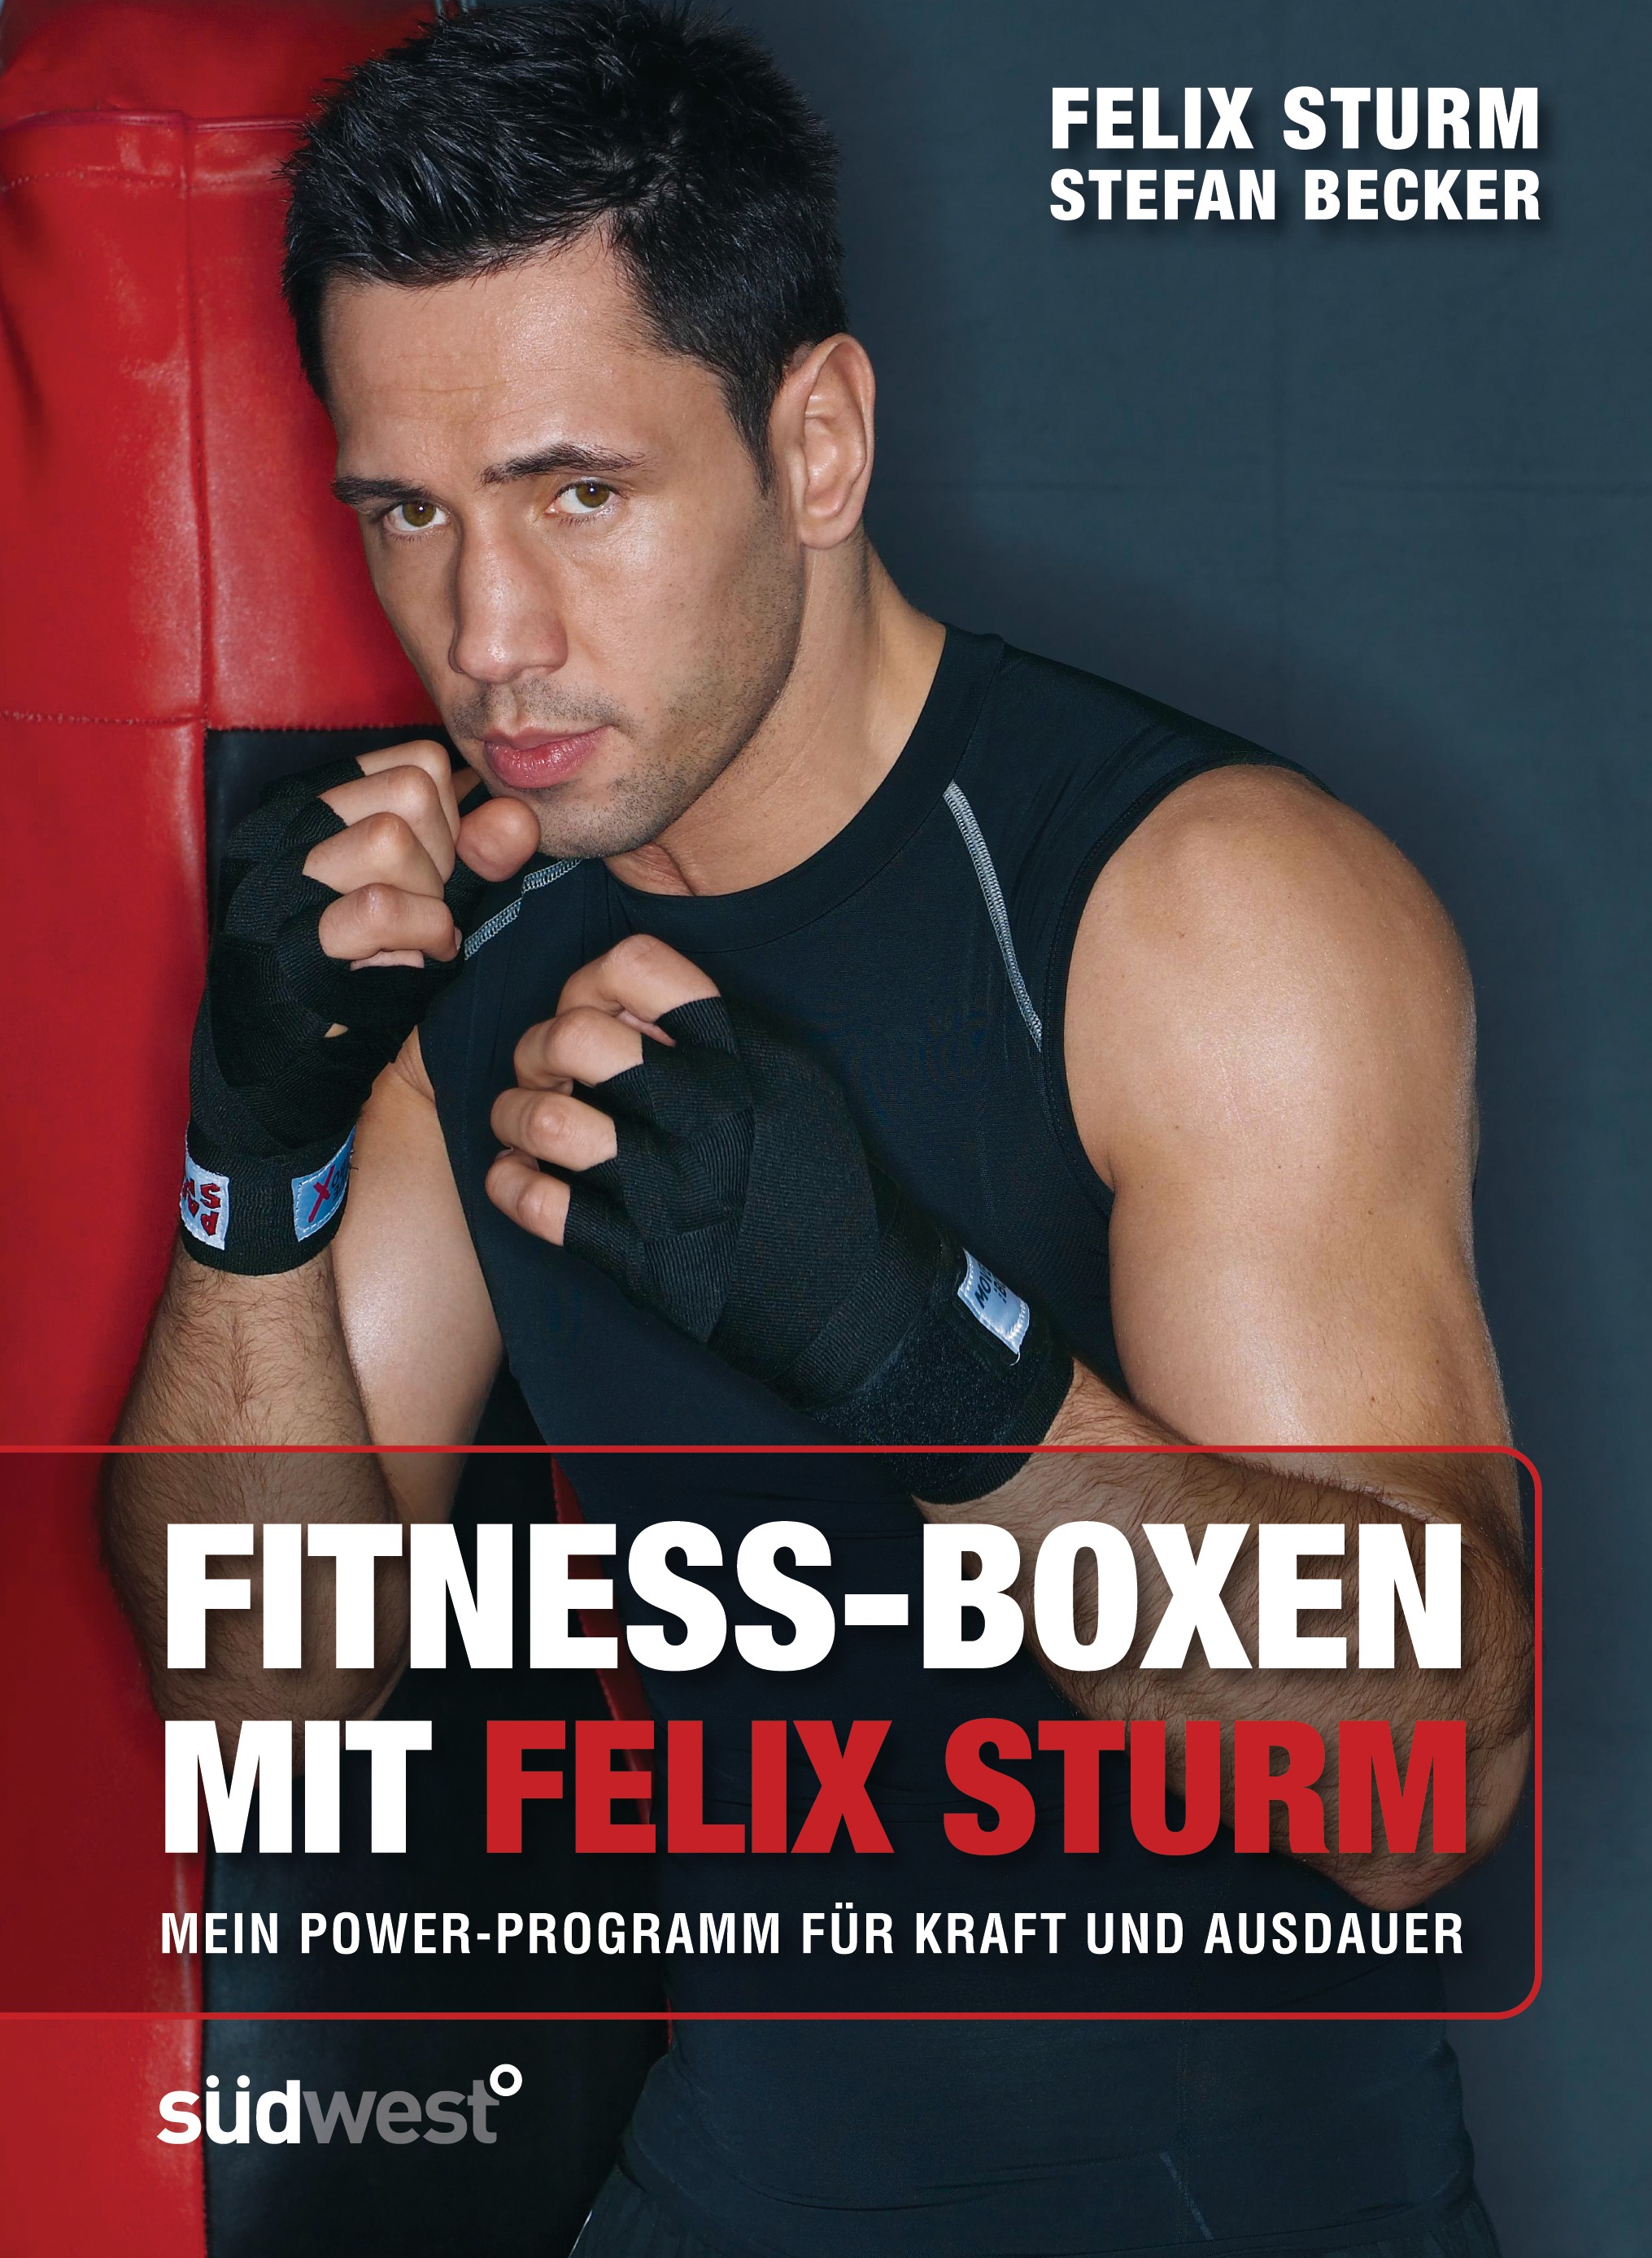 Felix Sturm Fitness-Boxen mit Felix Sturm